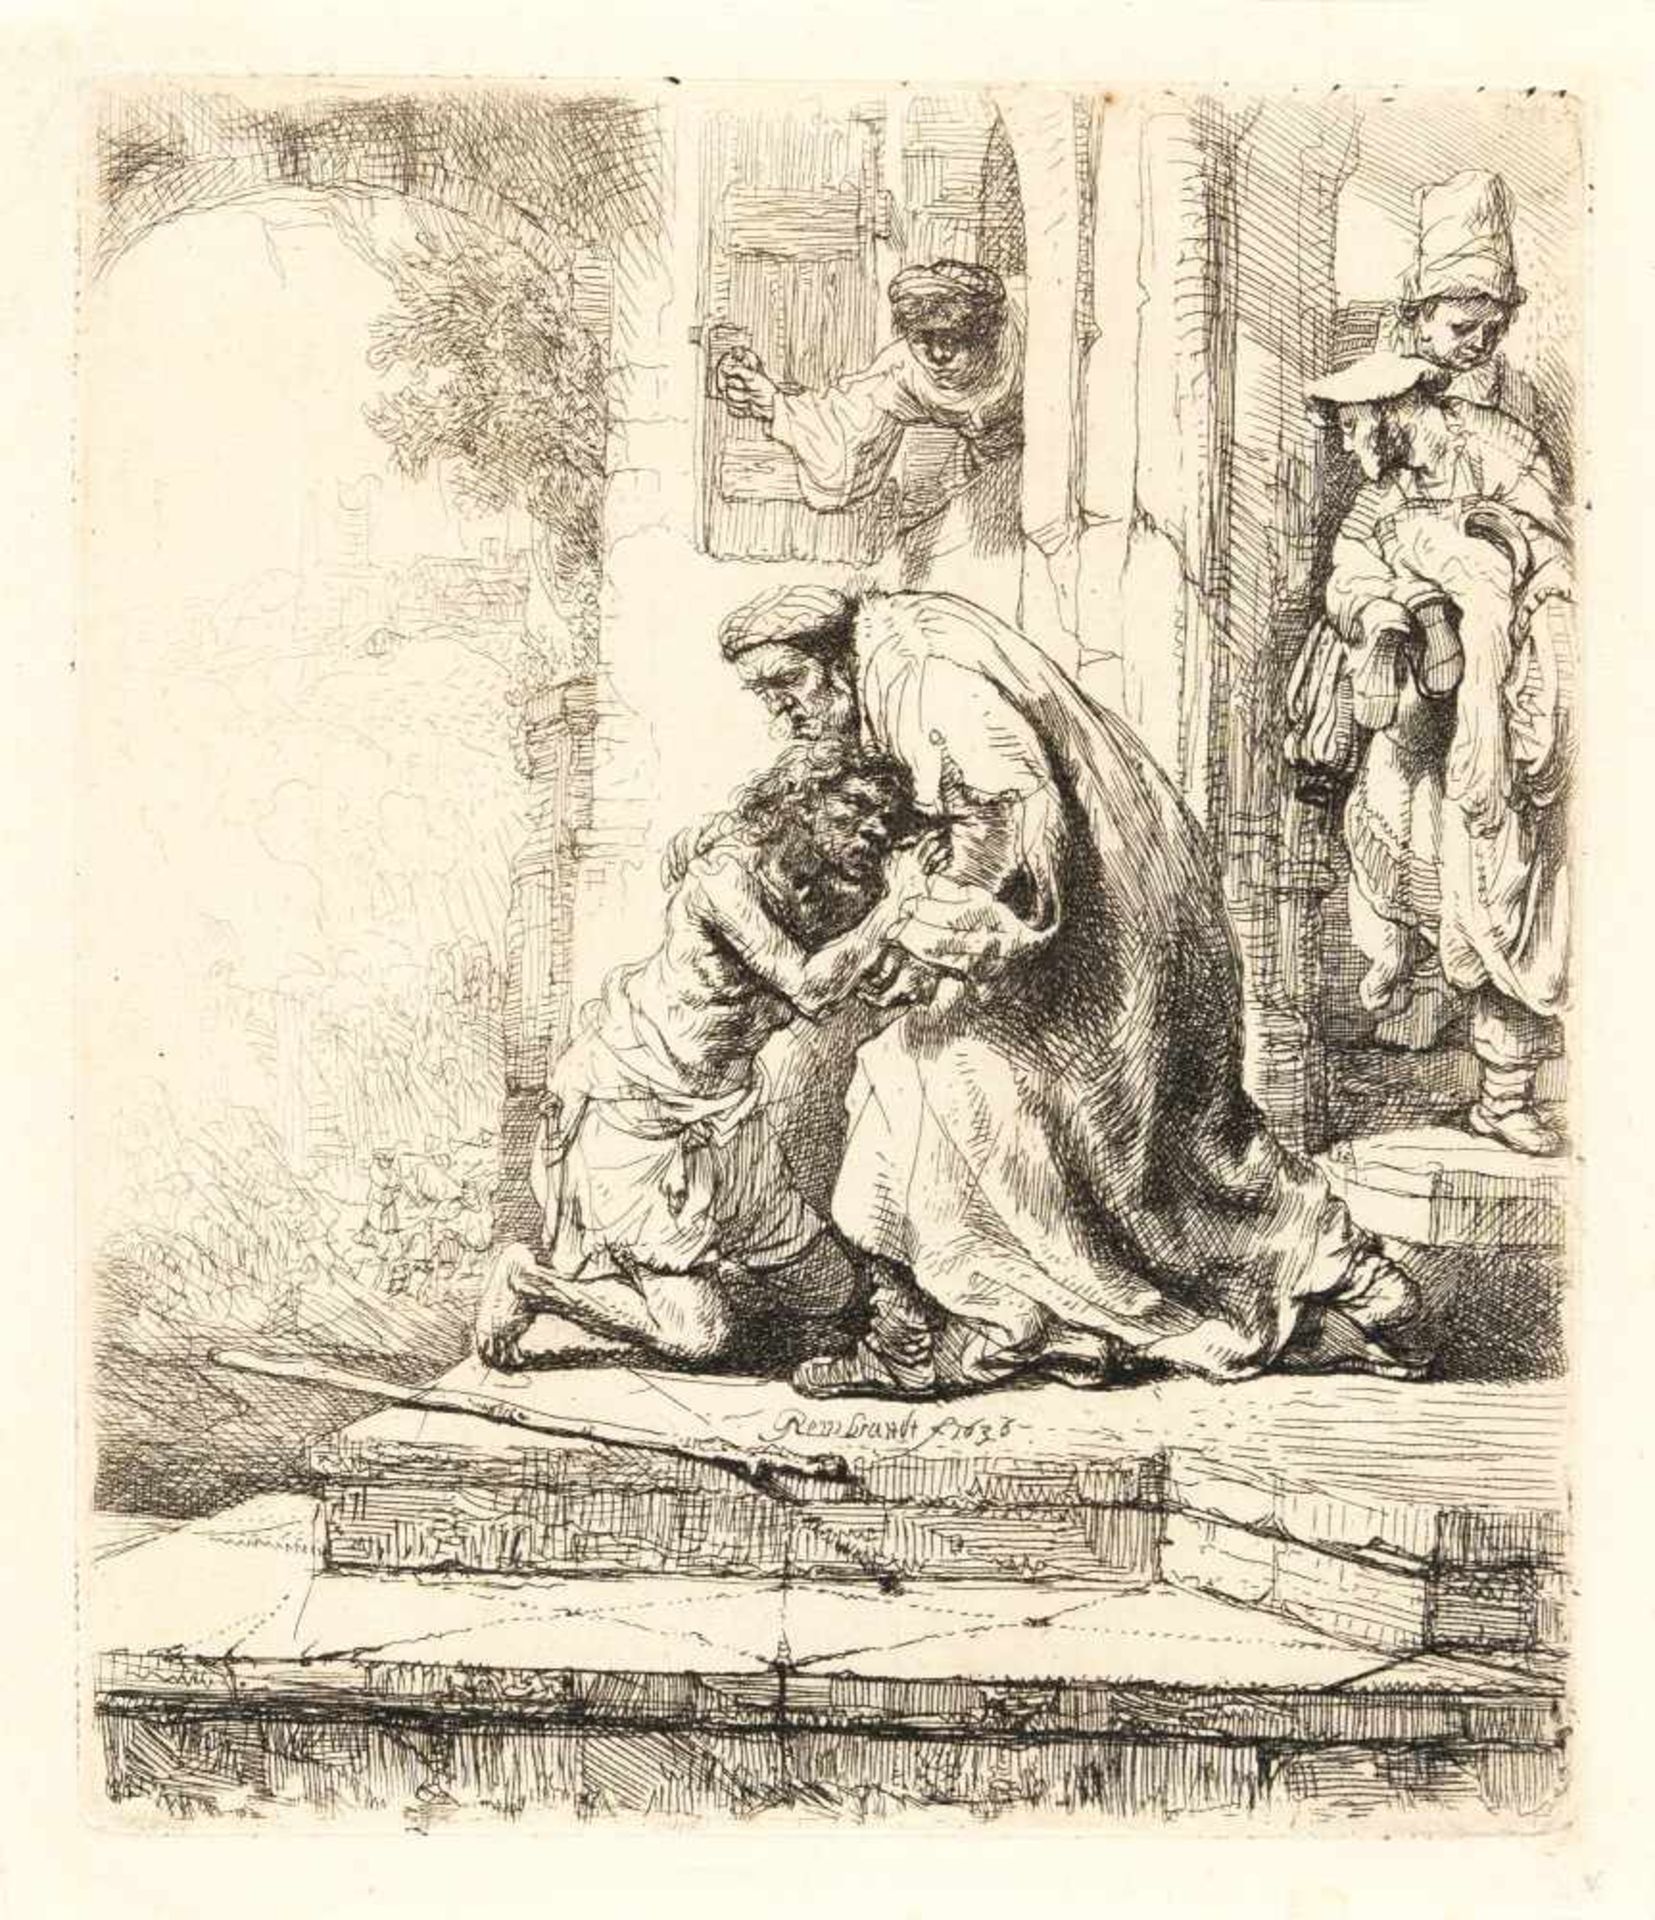 Rembrandt Harmensz. Van Rijn1606 Leiden - Amsterdam 1669Die Heimkehr des verlorenen